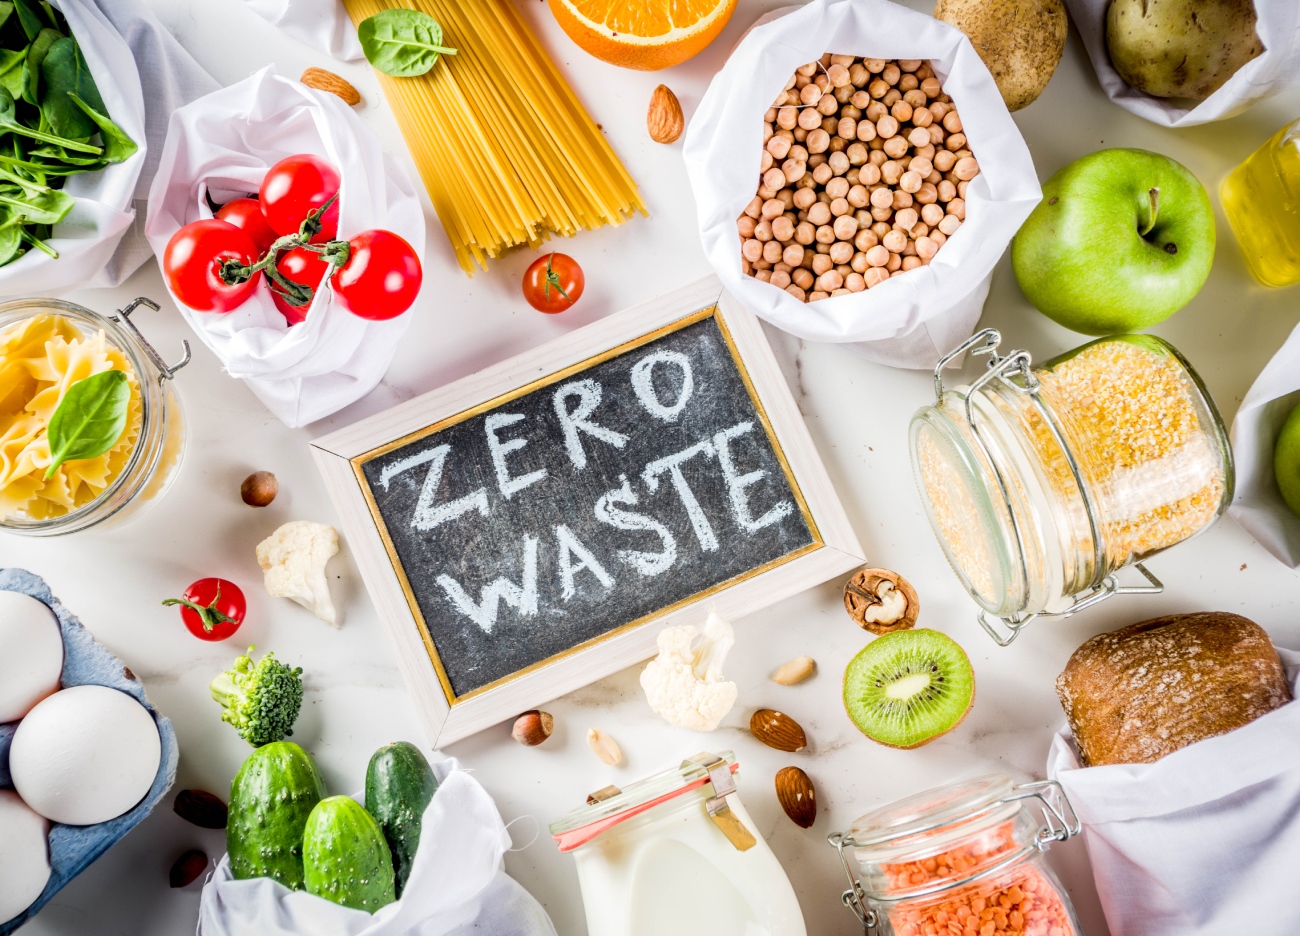 5 ways the UK is tackling food waste - BreadBags